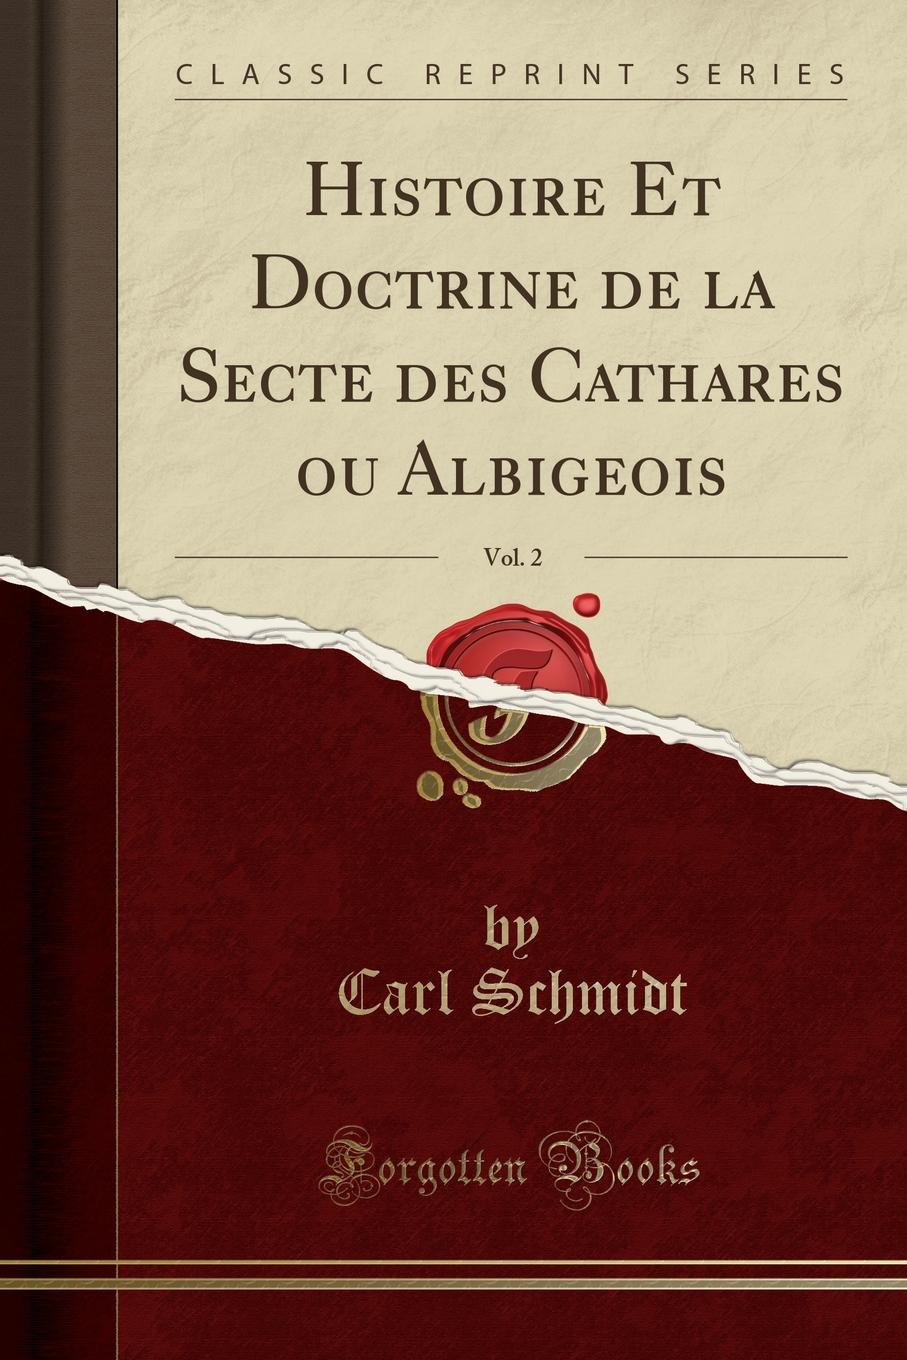 Histoire Et Doctrine de la Secte des Cathares ou Albigeois, Vol. 2 (Classic Reprint)